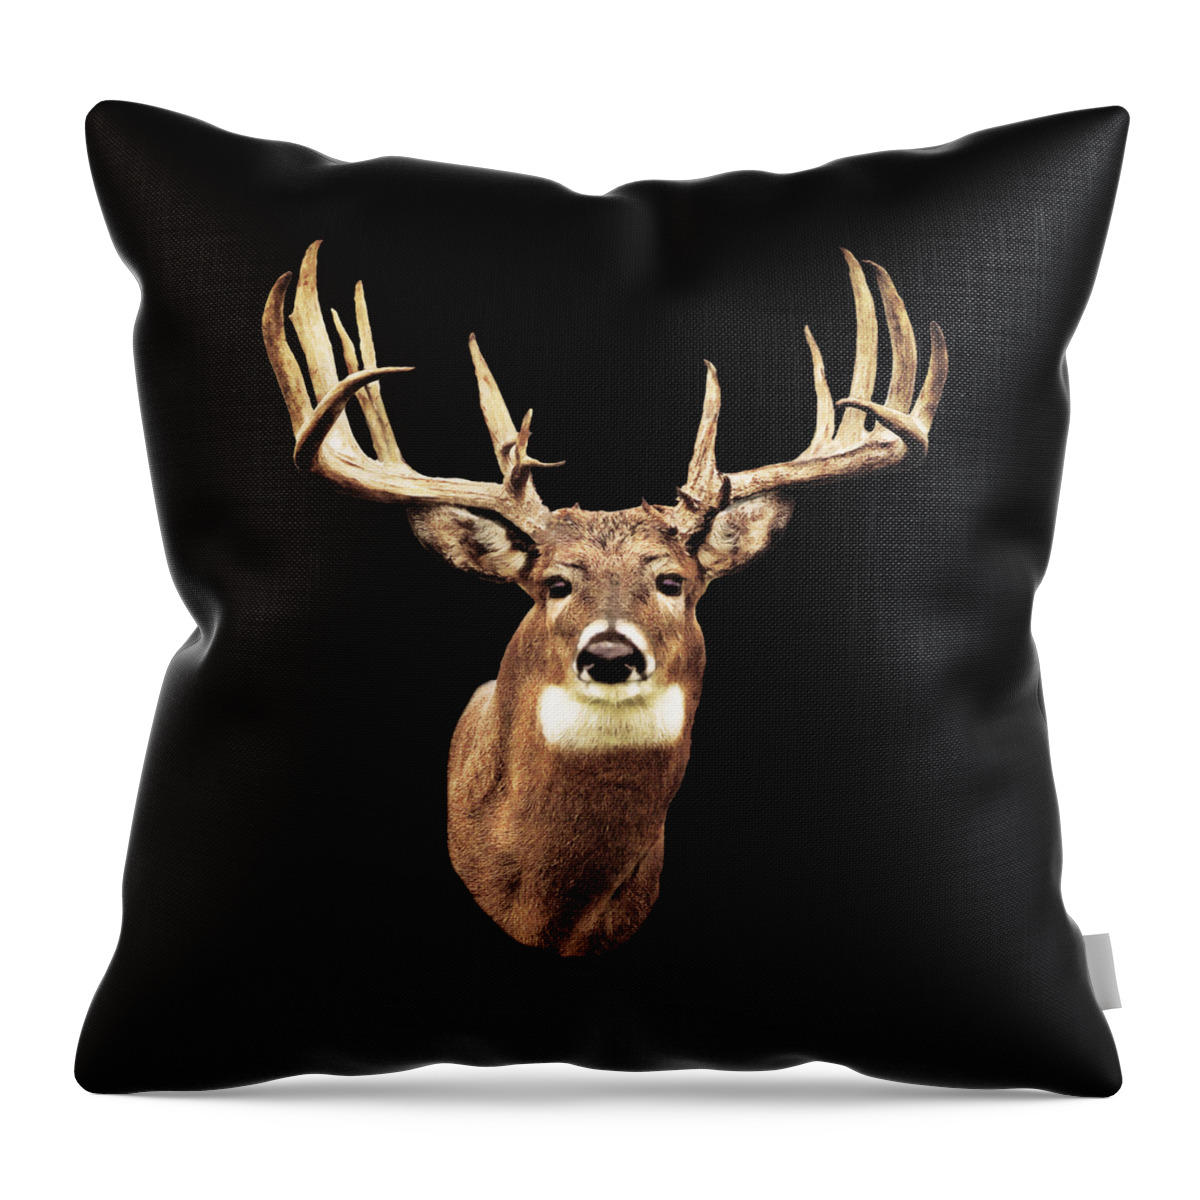 Deer Throw Pillow featuring the digital art Mule Deer Head by Walter Colvin